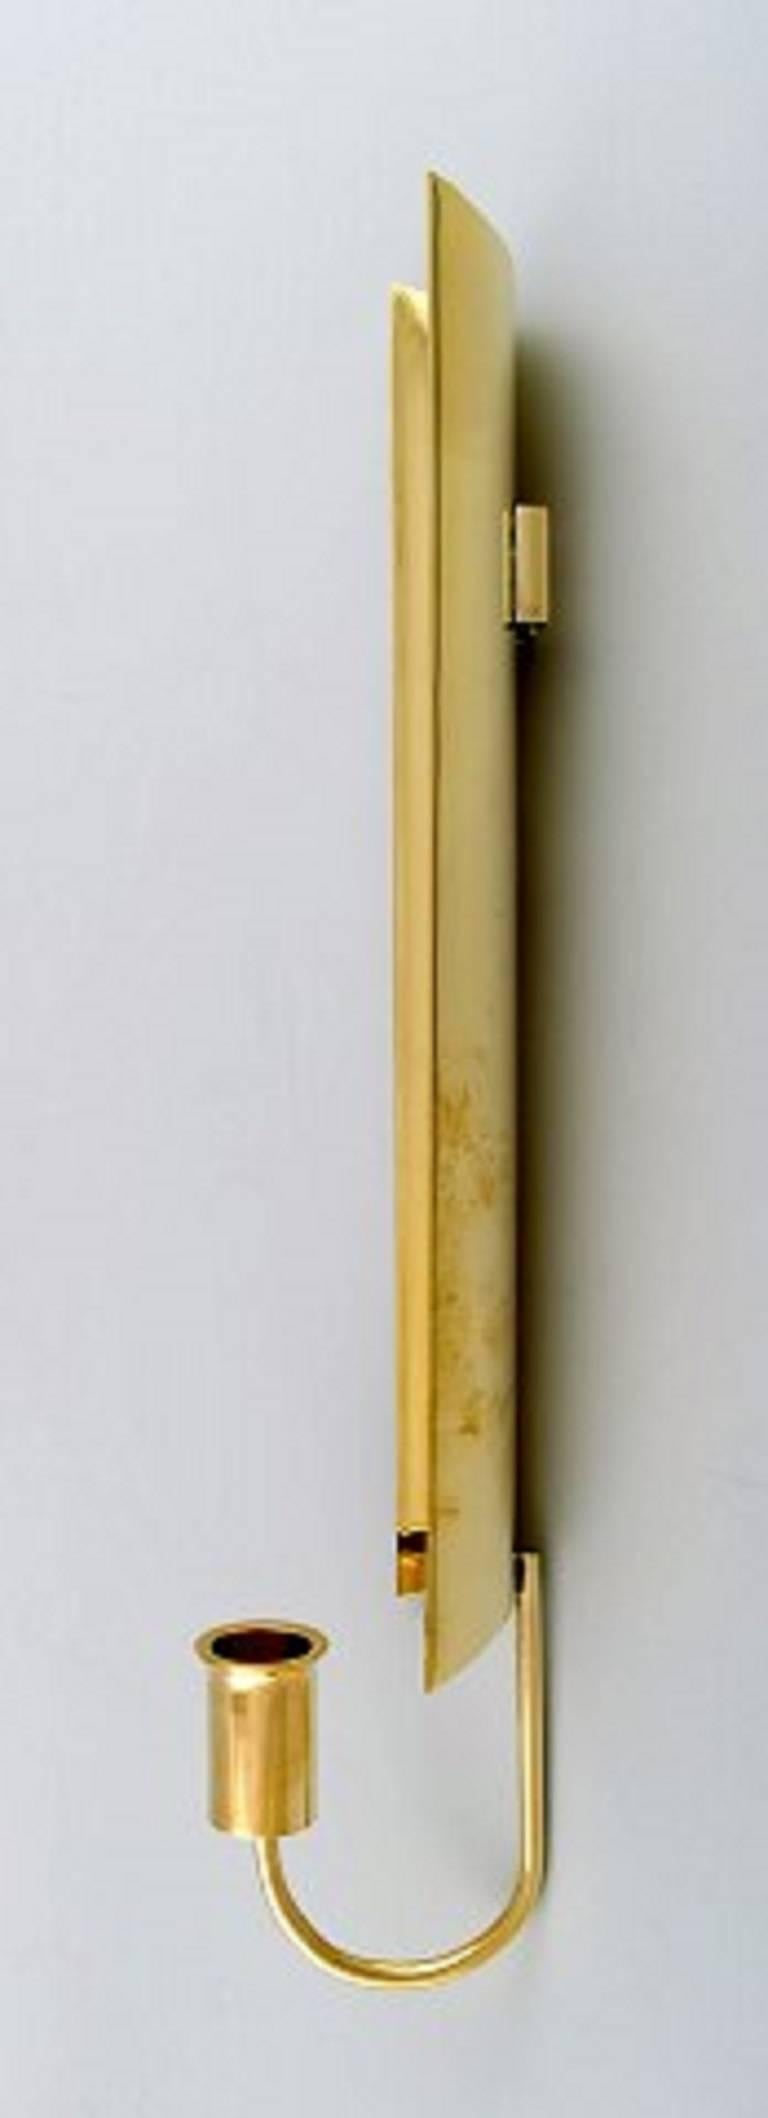 Scandinavian Modern Eight Wall Candlesticks, Reflex, Pierre Forsell, Skultuna, circa 1970s, Brass